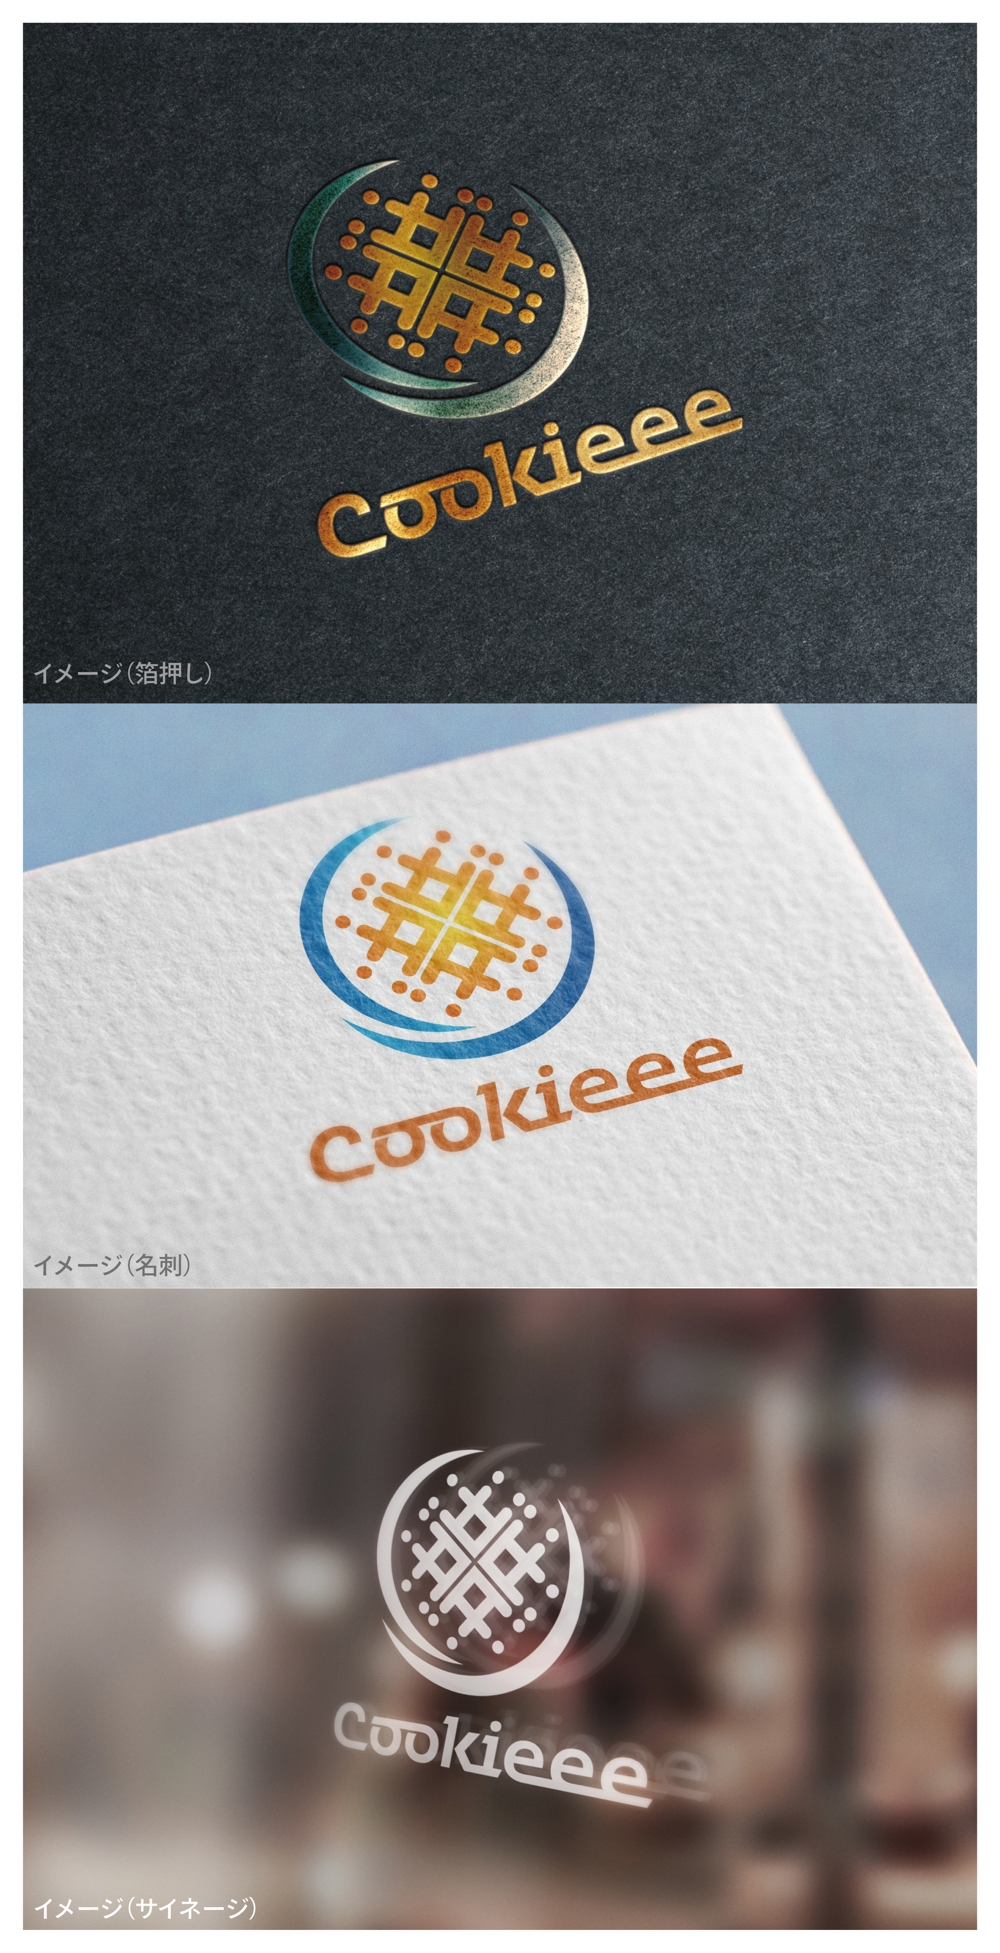 Cookieee_logo01_01.jpg